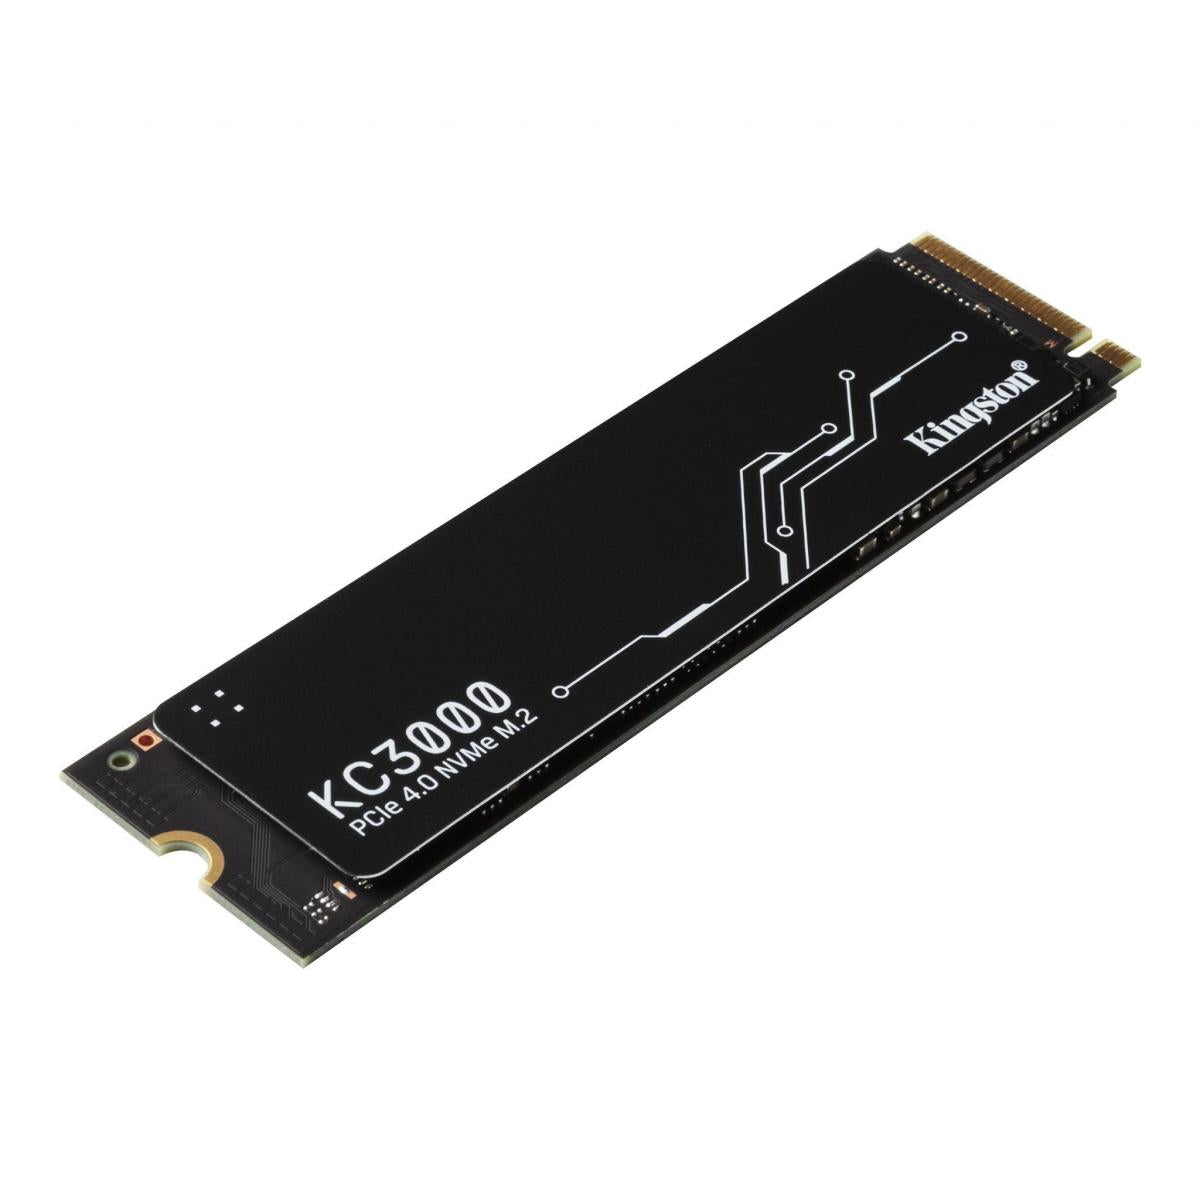 KC3000 PCIe 4.0 NVMe M.2 SSD 固態硬碟 (SKC3000)